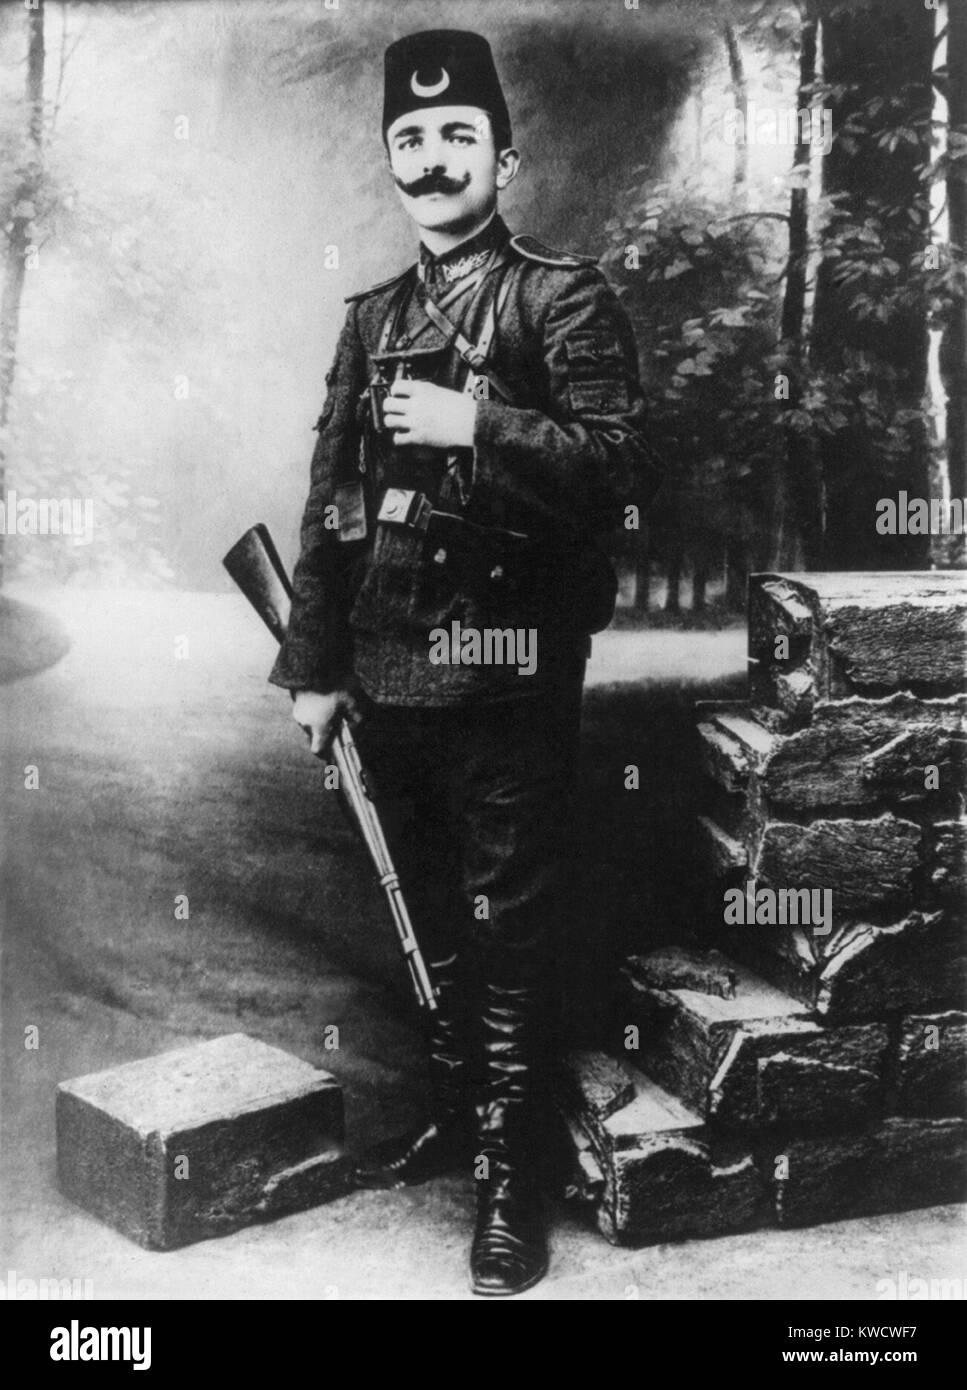 Ismail Enver Pasha, ottomano ufficiale militare e un leader del 1908 giovani Turk rivoluzione. Pascià è un titolo onorifico per Ottoman ufficiali militari di rango di Mirliva, simile a quella di una generale (BSLOC 2017 1 108) Foto Stock